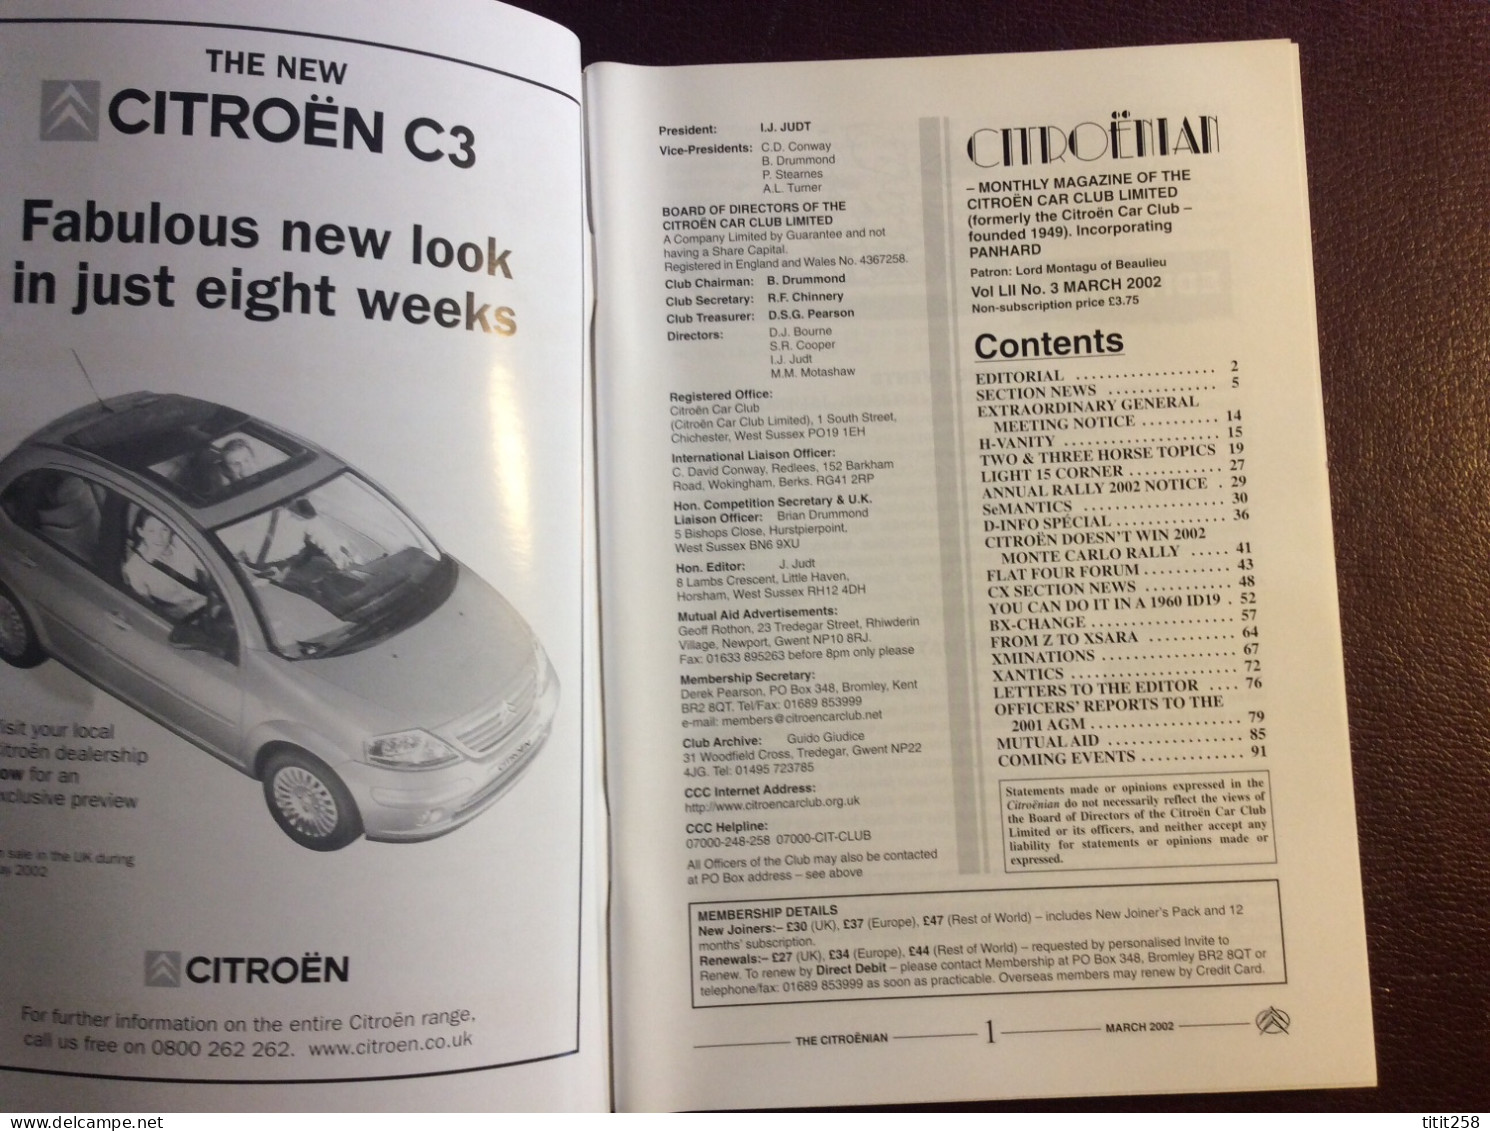 CITROENIAN Citroén Car Club Magazine Automobiles Citroén   . March Mars 2002 - Transportes